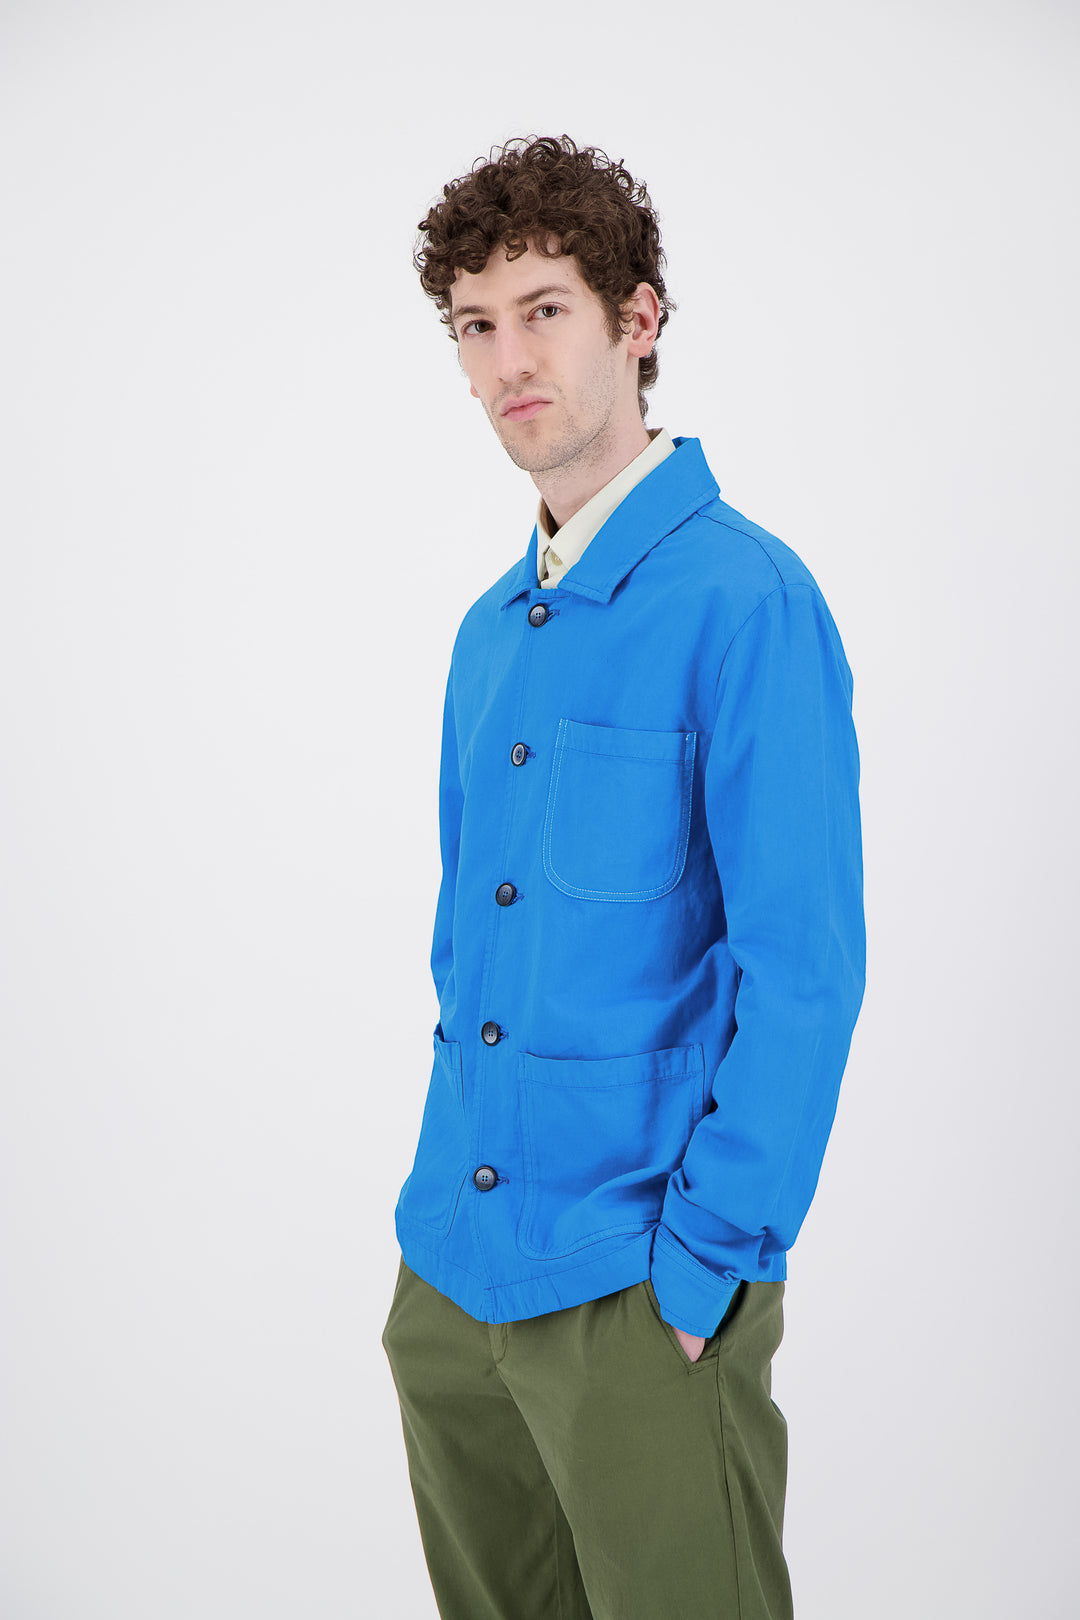 Hard Blue Workwear Jacket